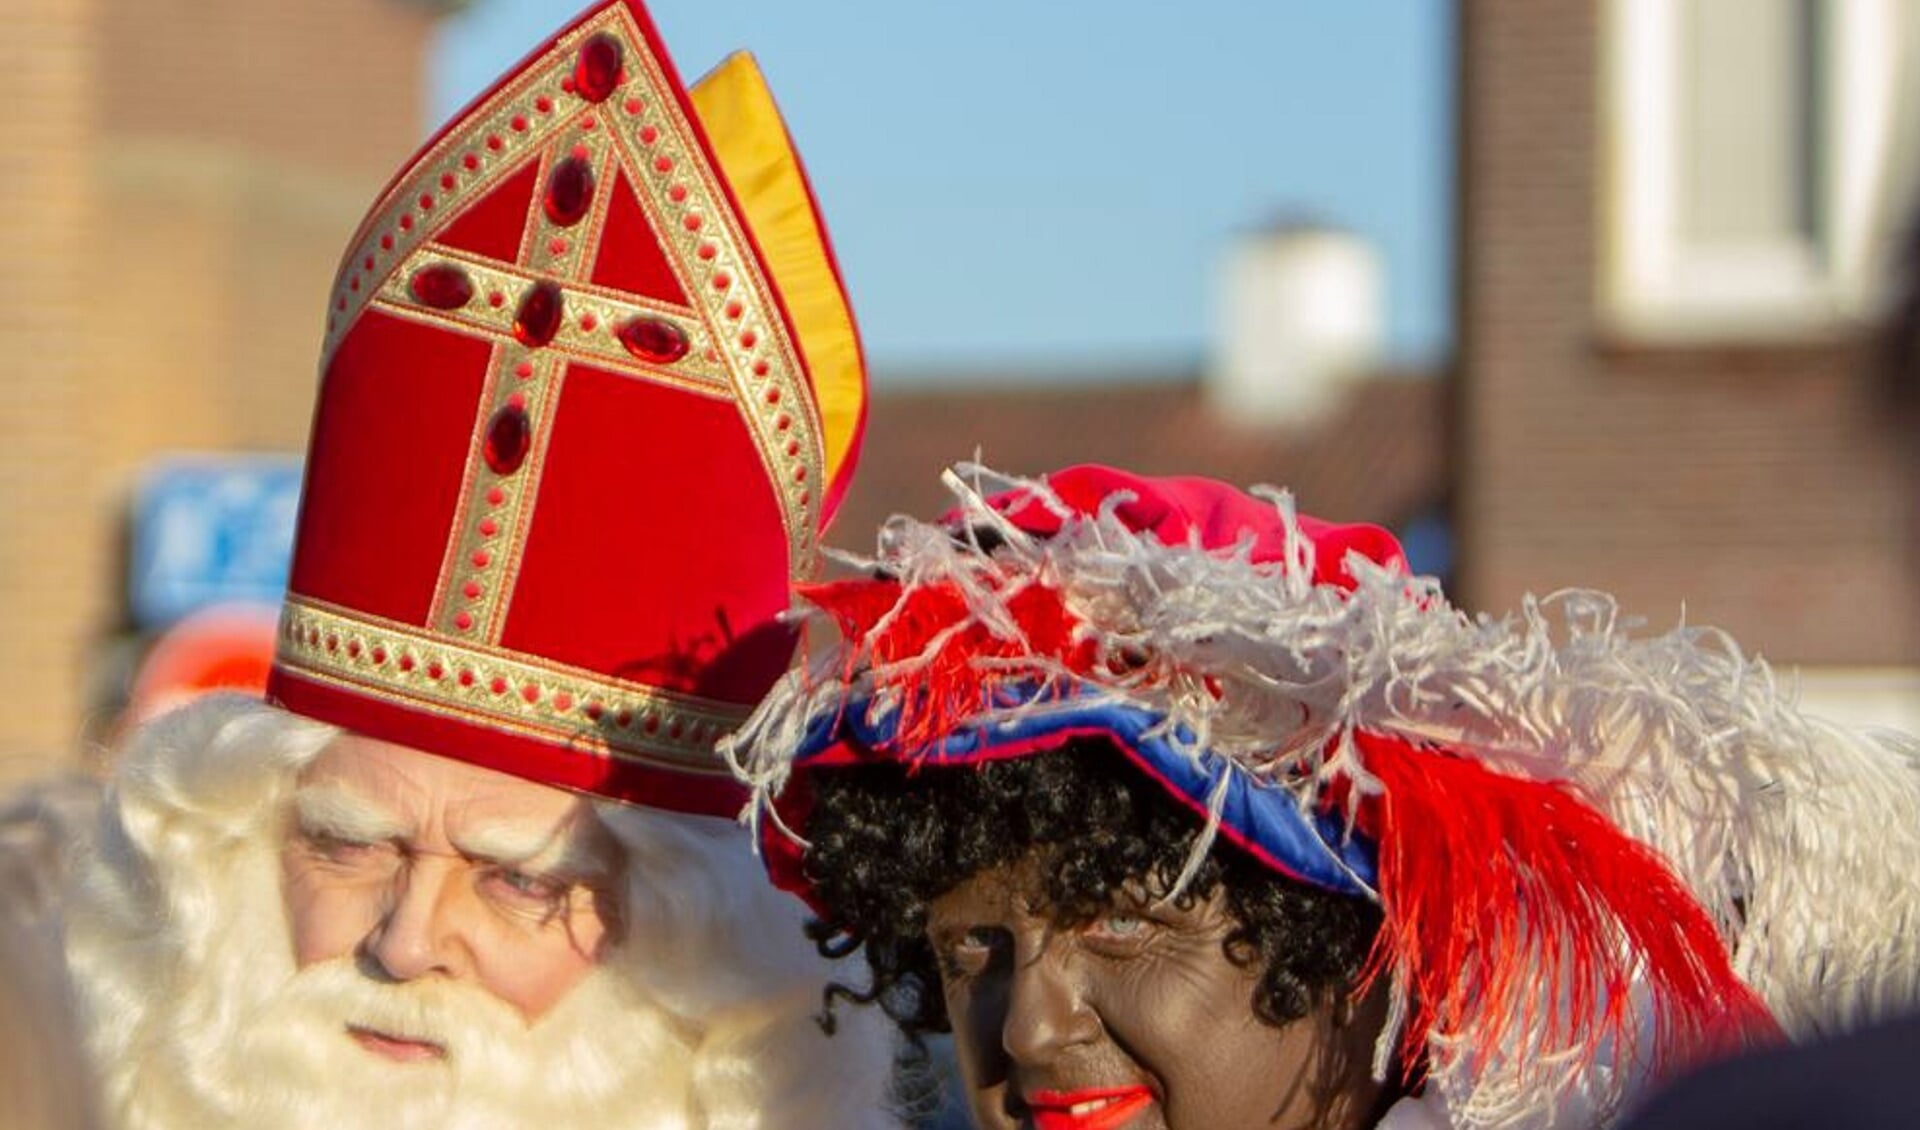 Sint Nicolaas komt zaterdag aan in Katwijk aan Zee, begeleid door een flink aantal pieten. | Foto: pr